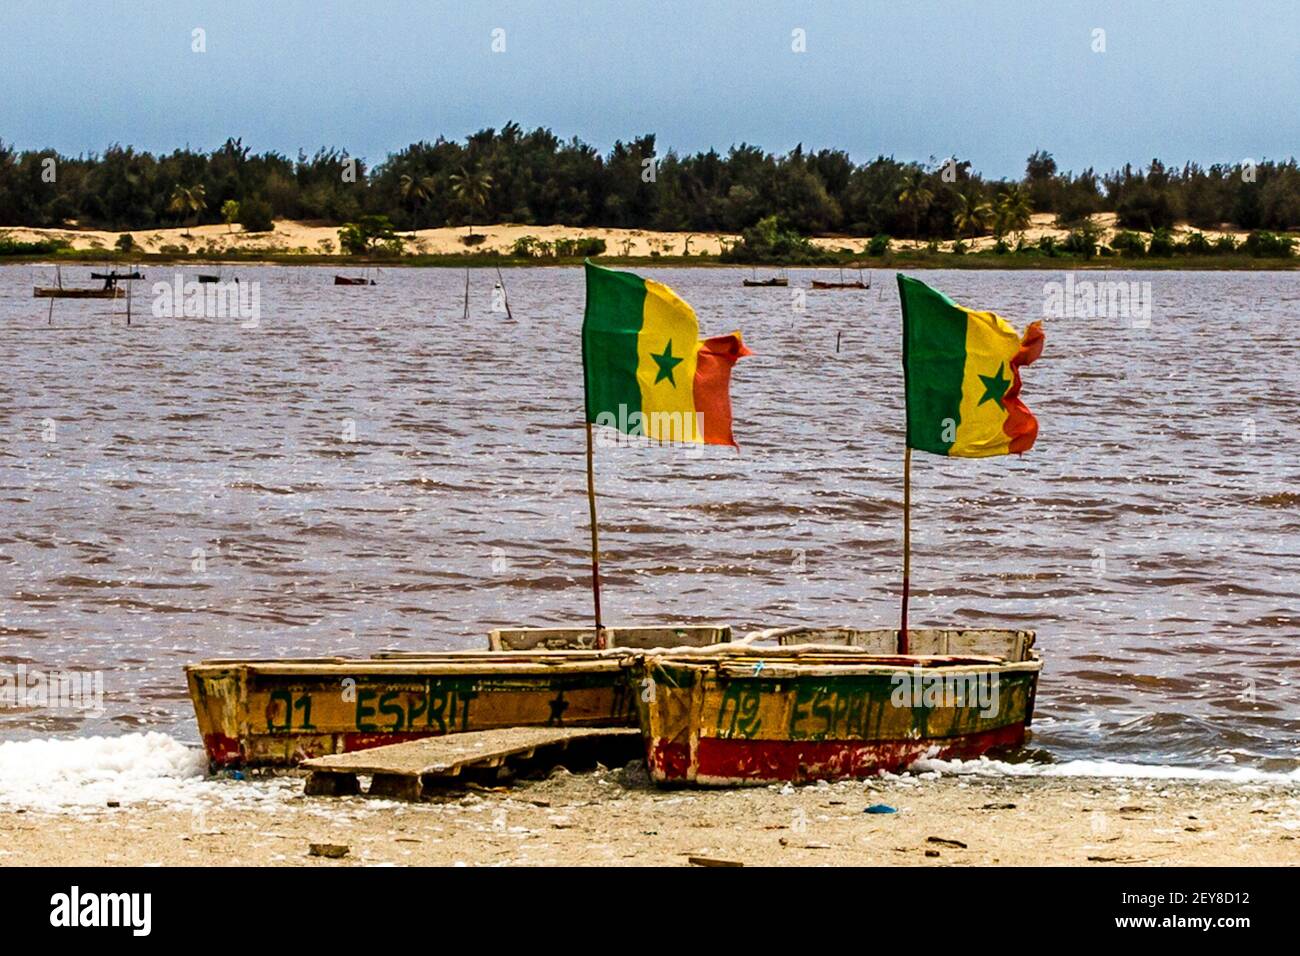 Sénégal, drapeaux sénégalais déchirés sur un canot à quai le long du lac Rose. Le drapeau de la République du Sénégal, adopté en 1960 au moment de l'indépendance, est Banque D'Images